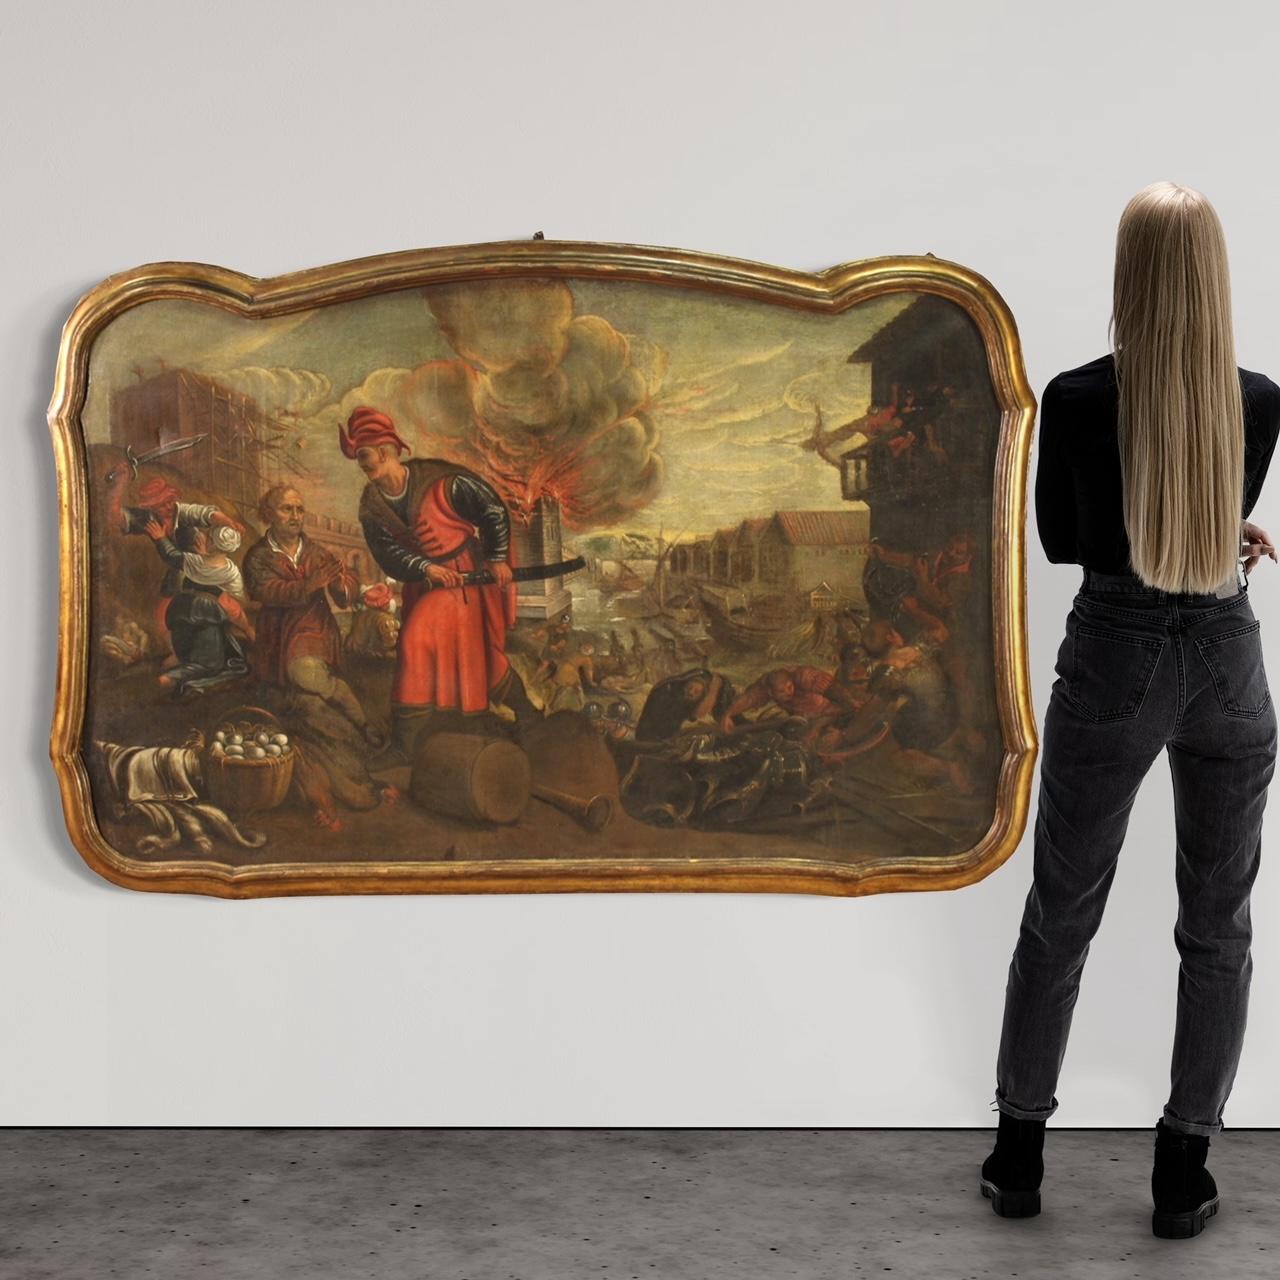 Großes italienisches Gemälde aus der zweiten Hälfte des 17. Jahrhunderts. Ölgemälde auf Leinwand, das die Plünderung einer Stadt am Meer durch die Sarazenen darstellt, von guter malerischer Qualität. Wir treffen auf zahllose Charaktere, die aus